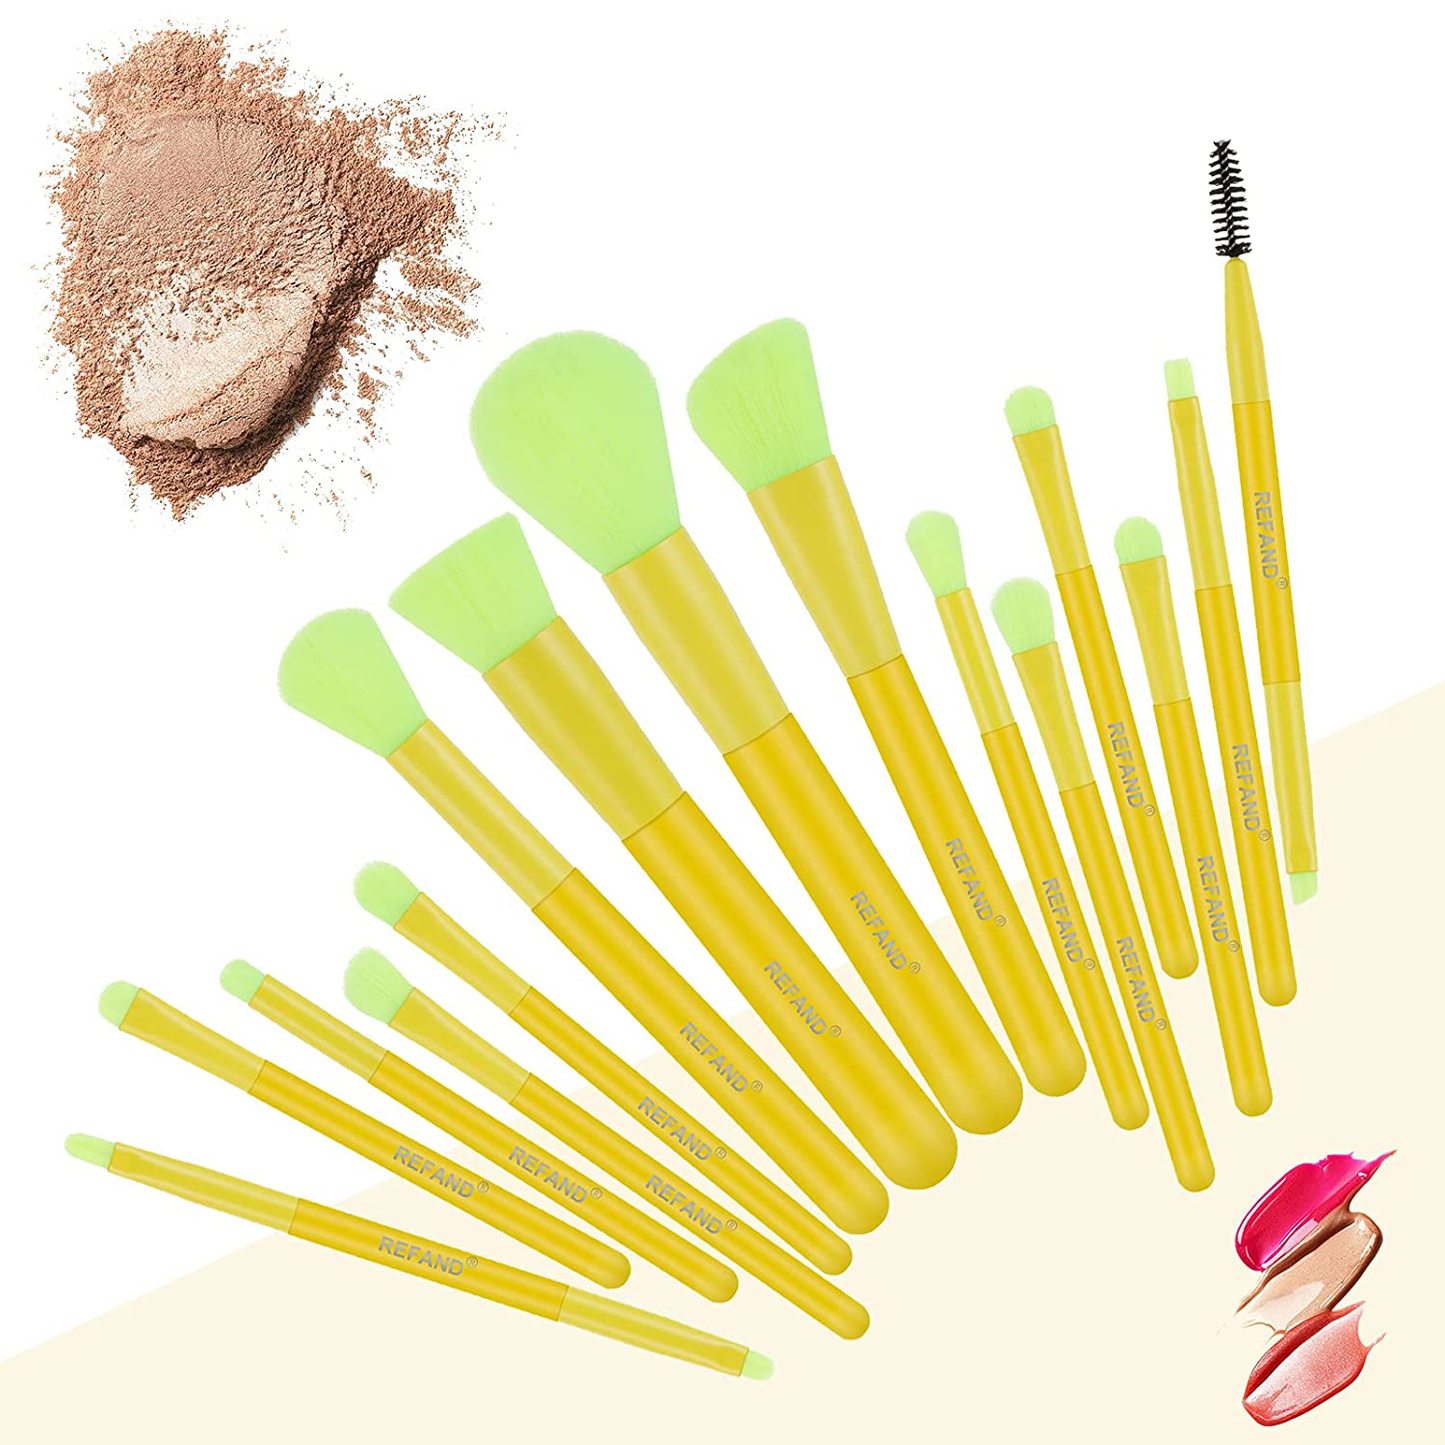 Refand Makeup Brushes 15 Pcs Premium Synthetic Kabuki Foundation Brush Blending Face Powder Blush Concealers Eye Shadows Makeup Brush Set, Neon Green